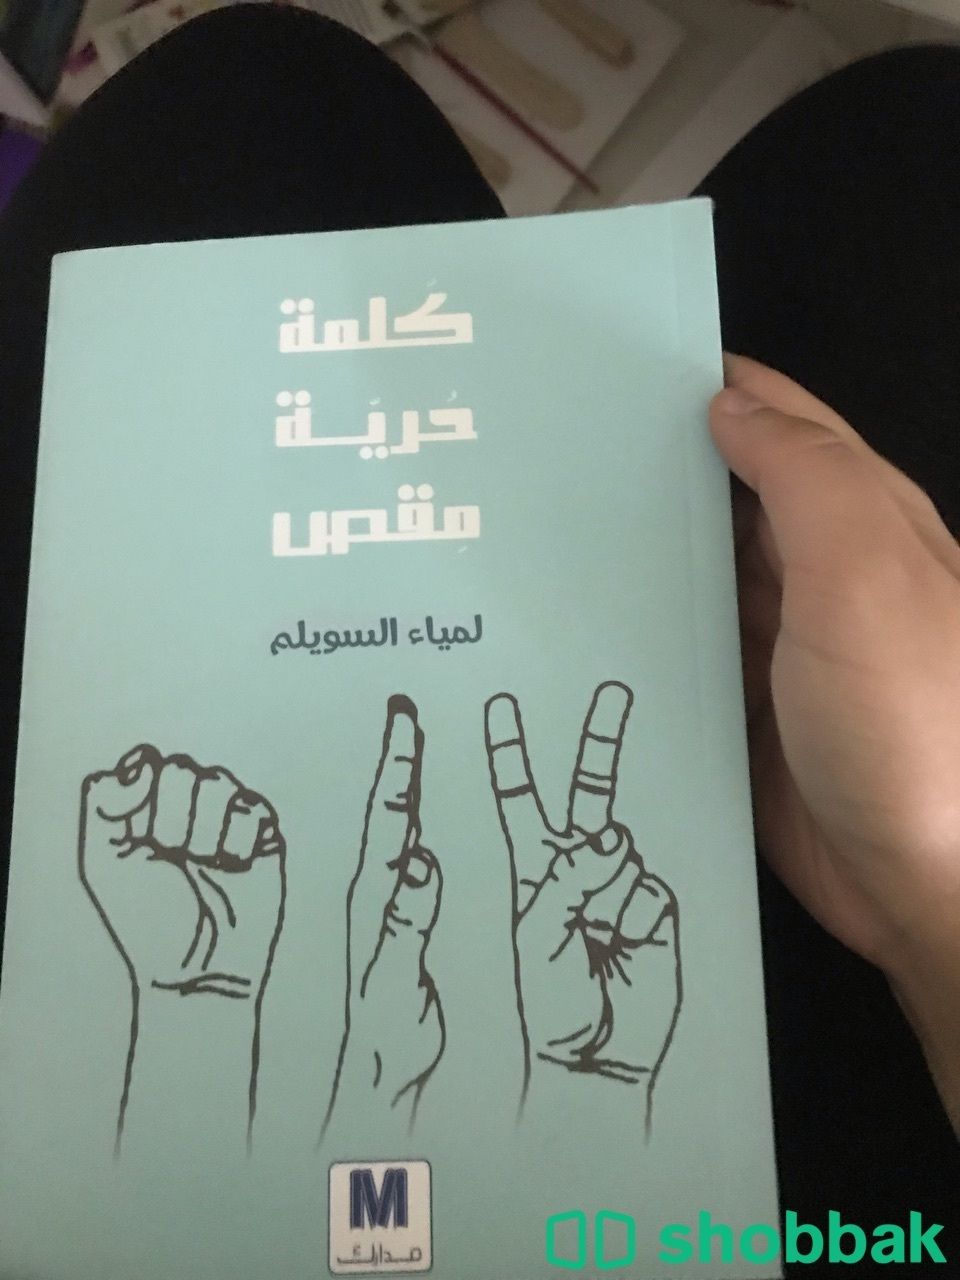 20 كتاب مستعمل للبيع الواحد ب 10 ريال Shobbak Saudi Arabia